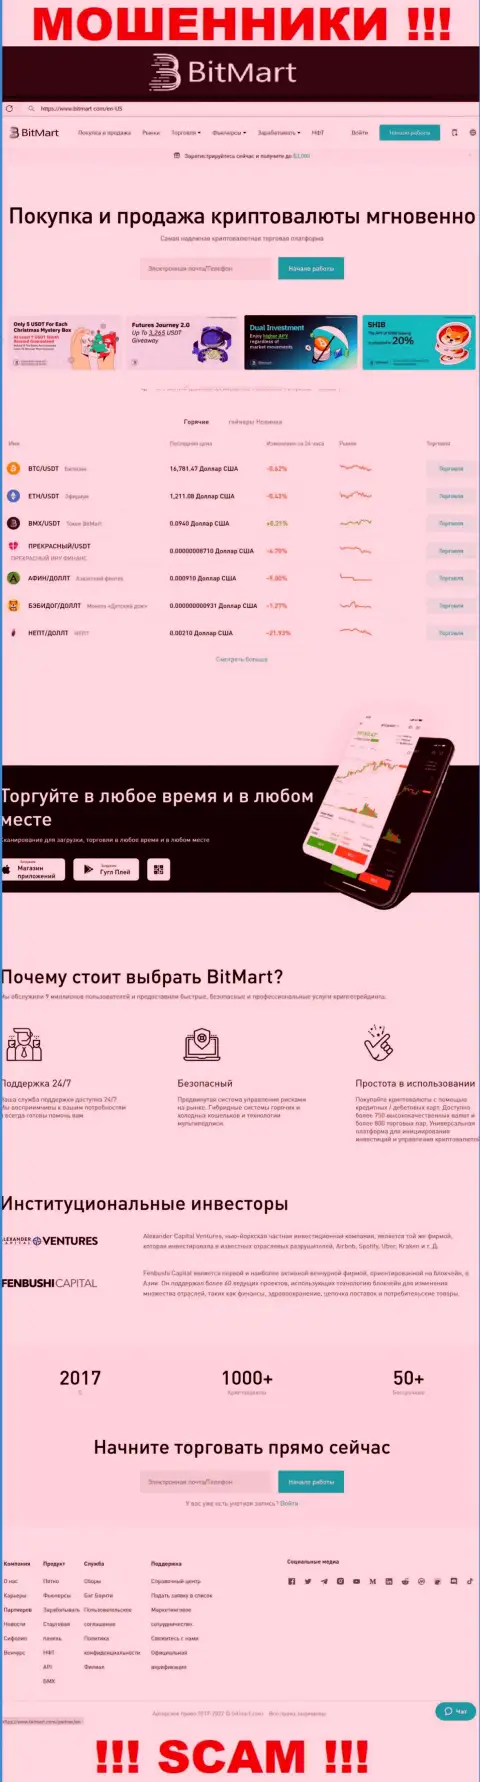 Внешний вид официального сайта неправомерно действующей организации BitMart